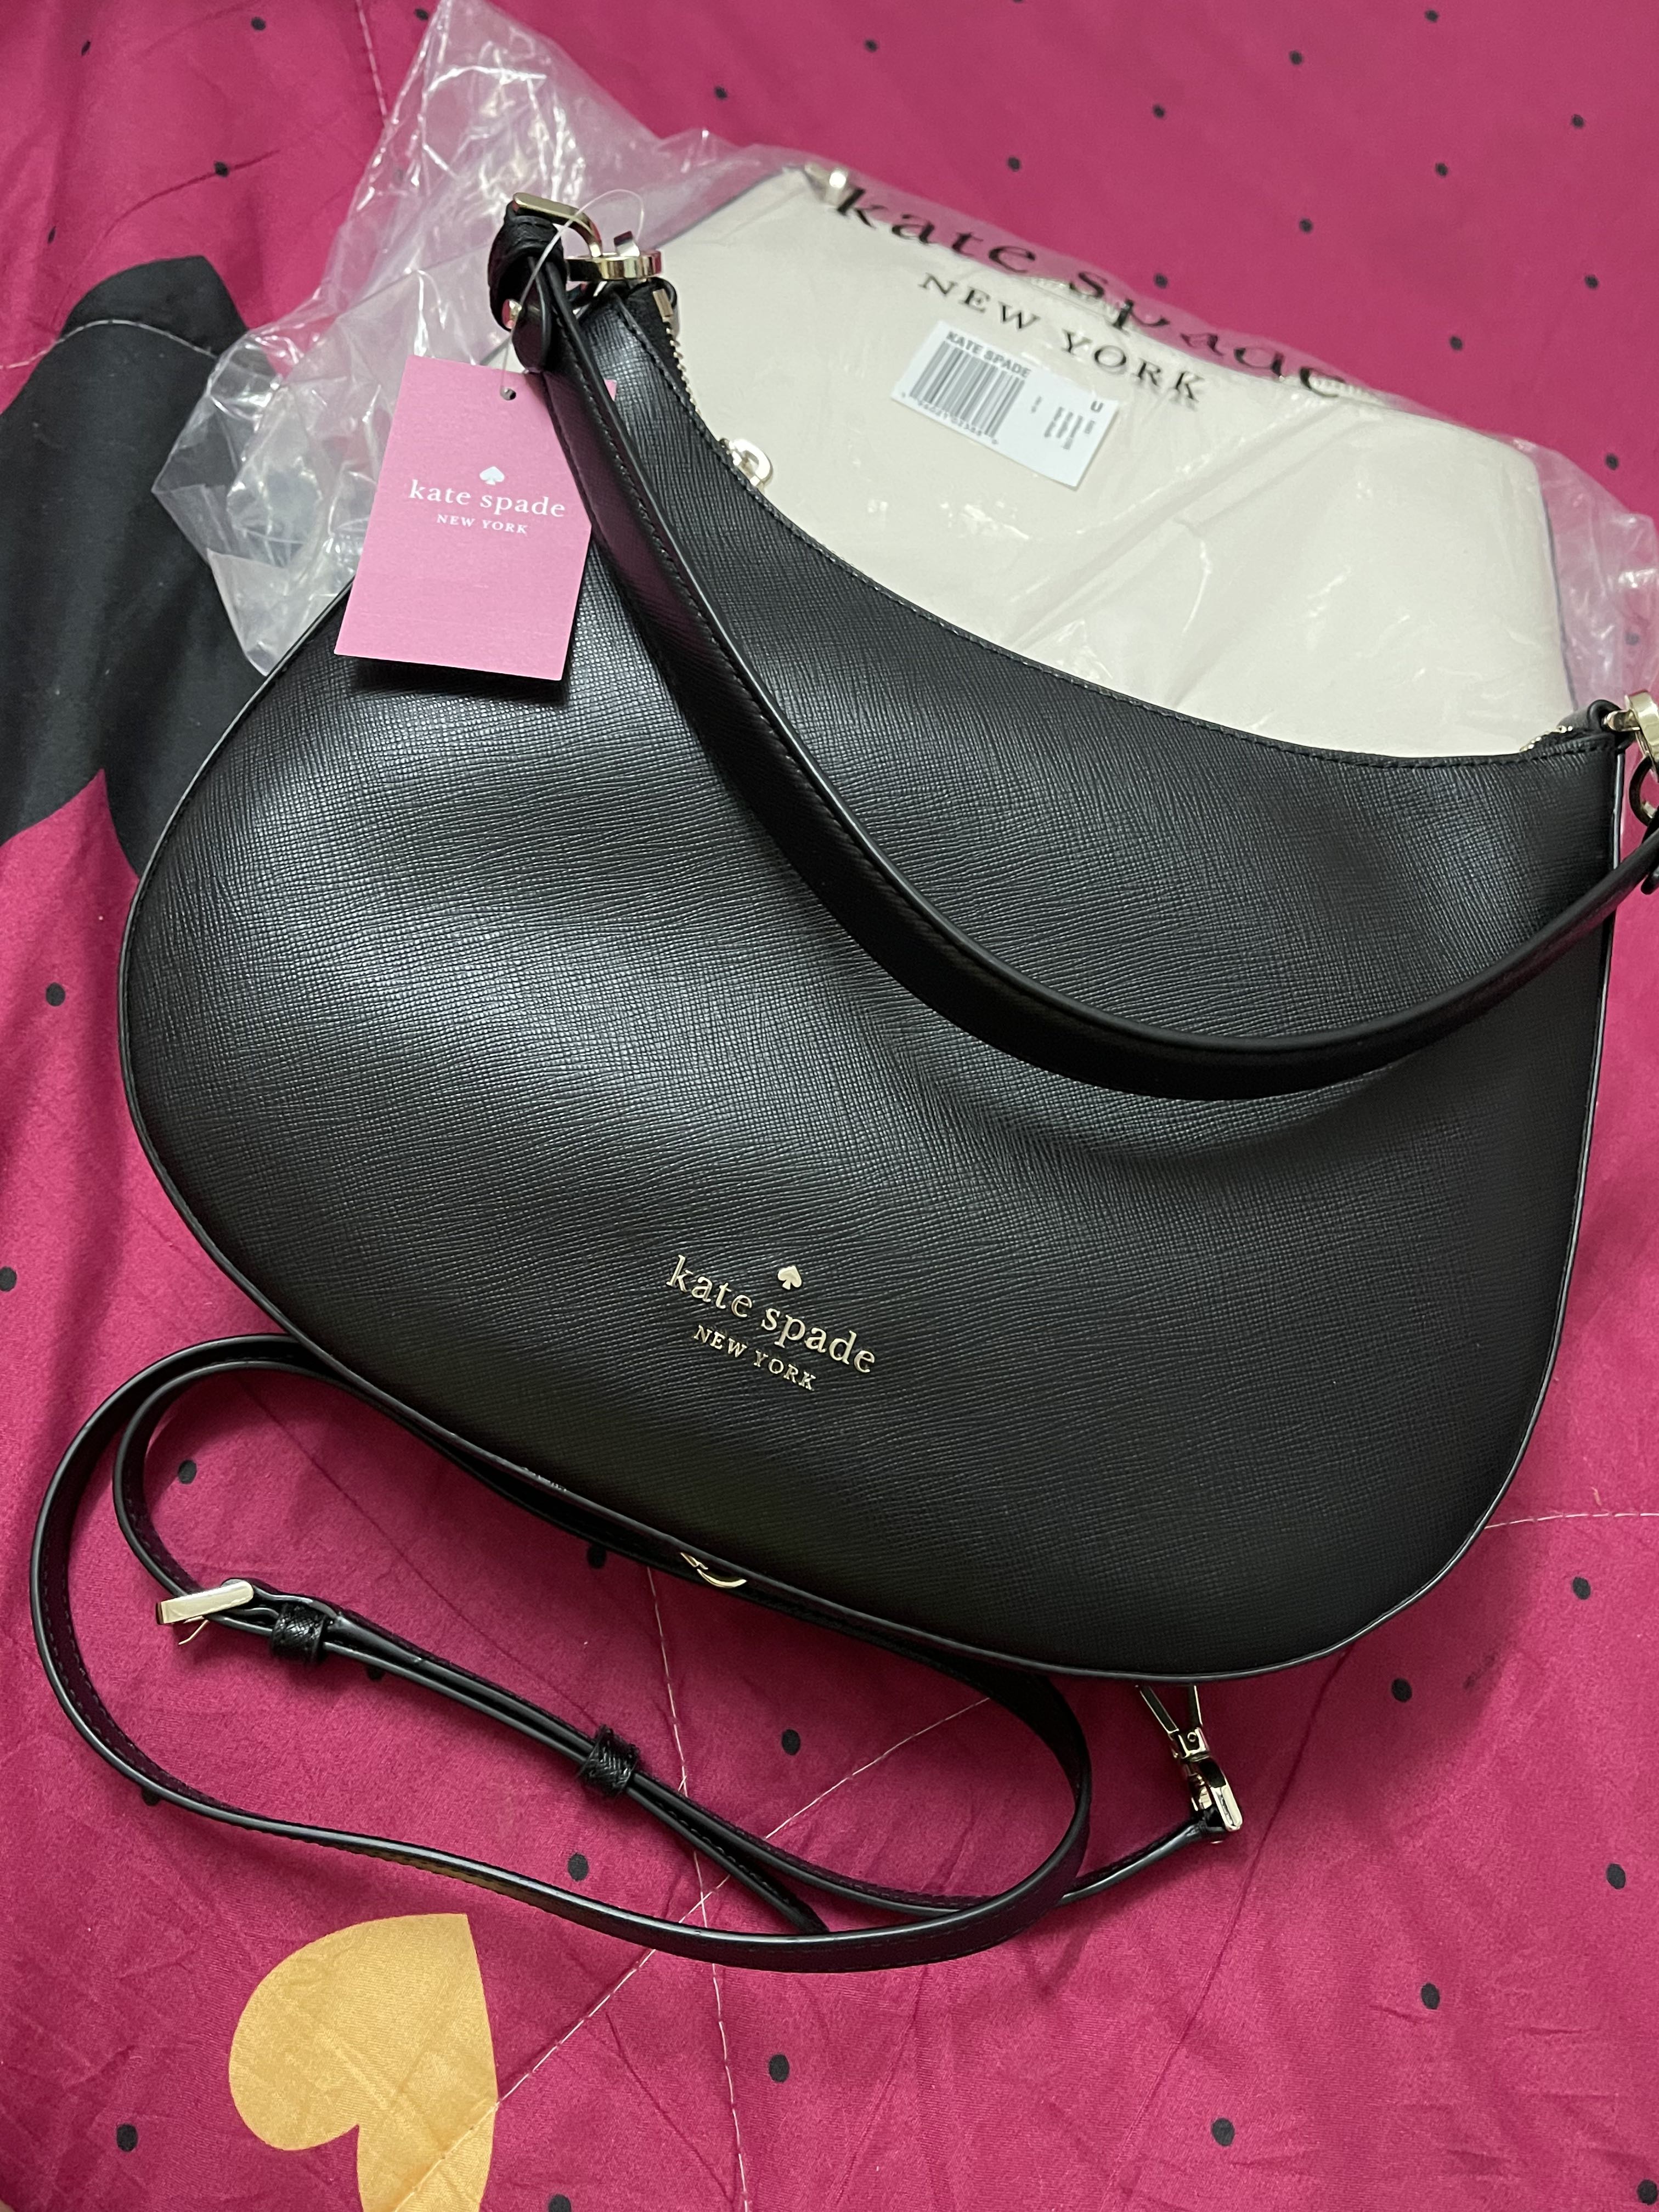 Kate Spade Staci Saffiano Leather Shoulder Bag Black K6042, Luxury